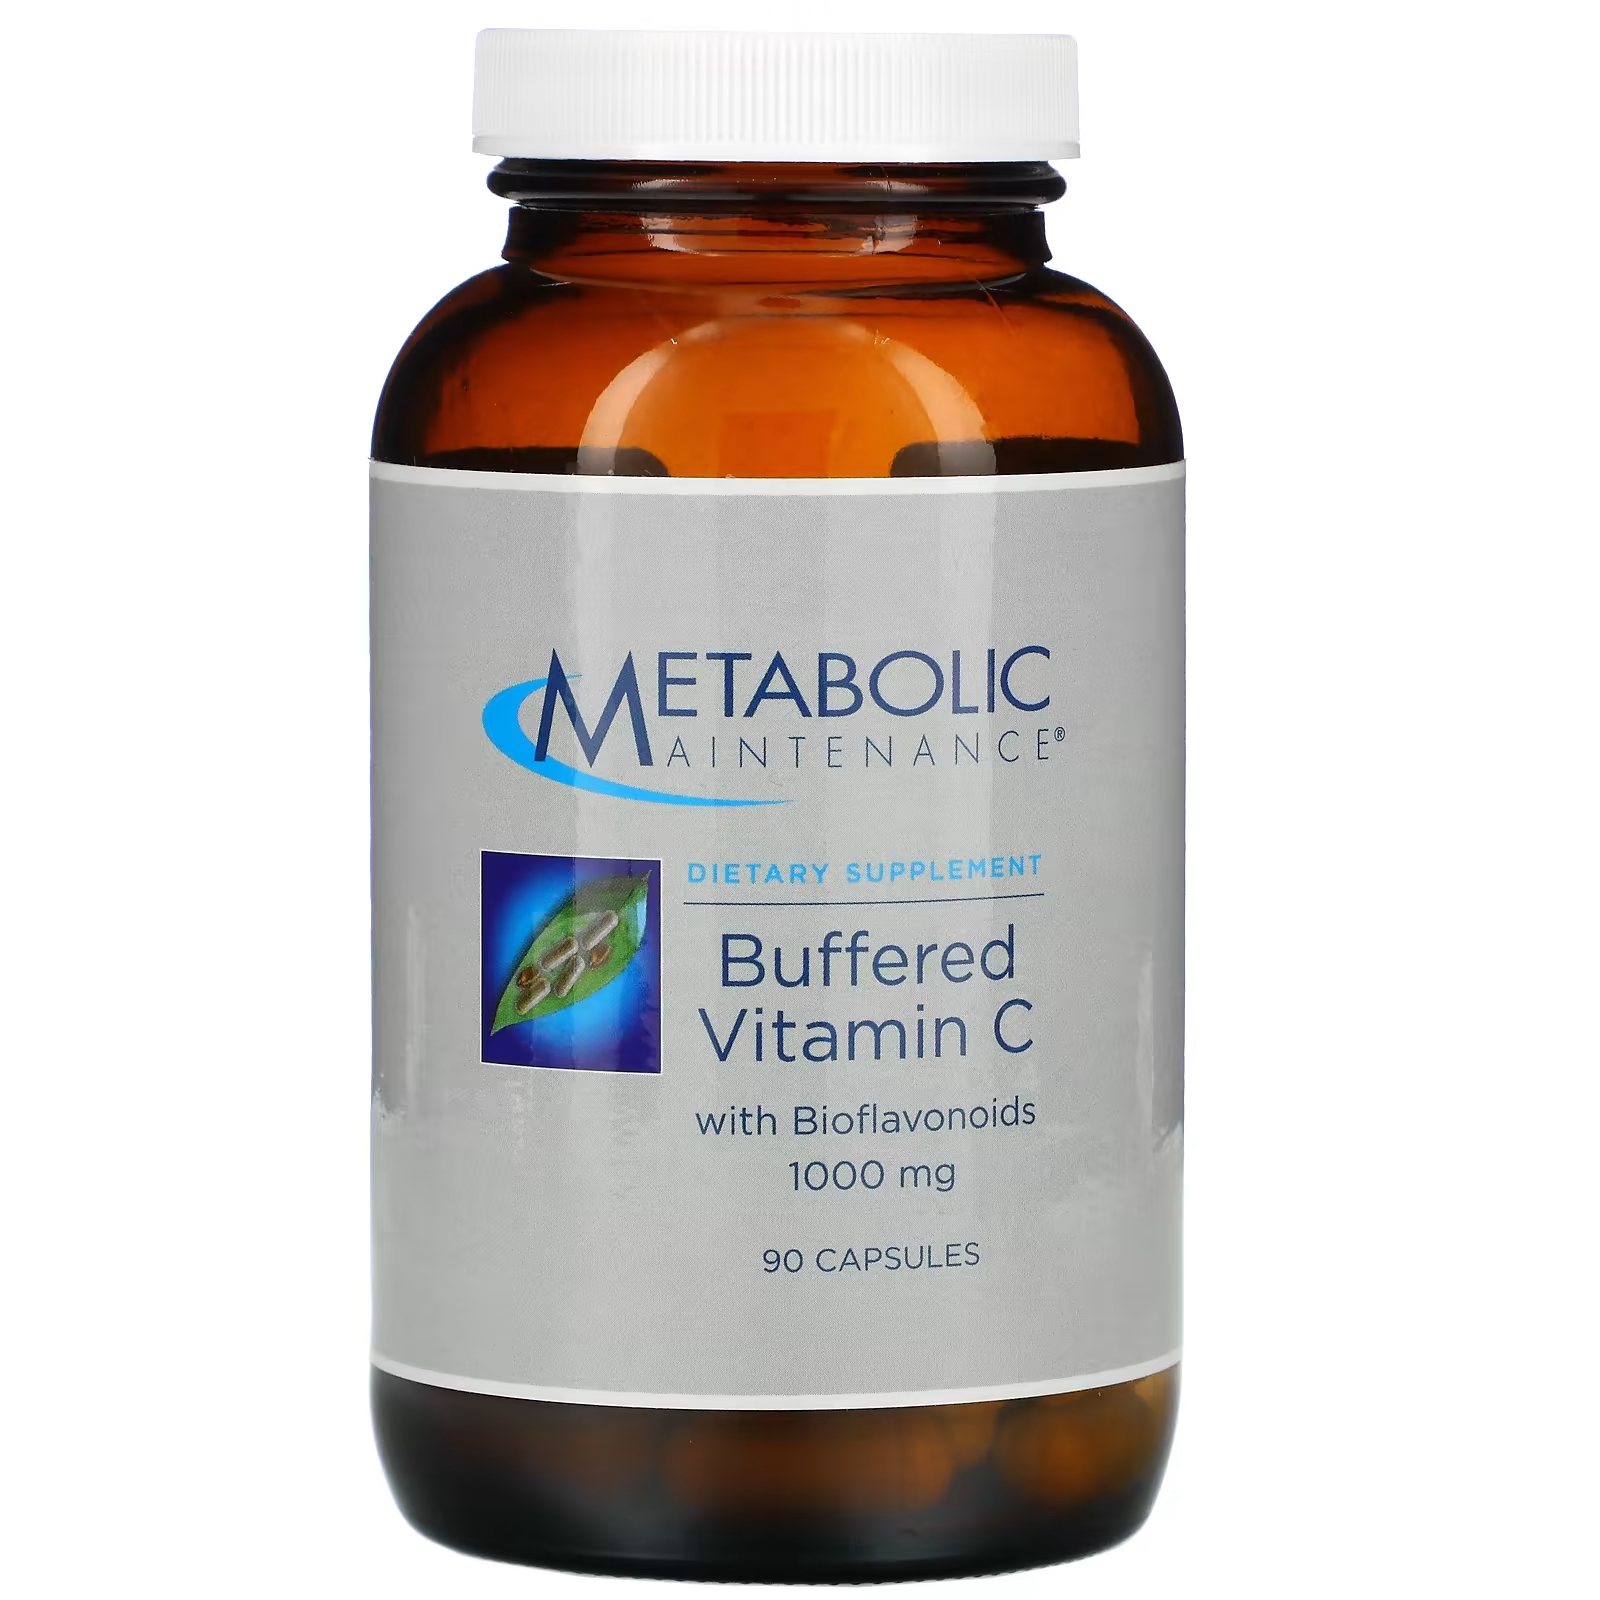 Буферизованный Витамин C Metabolic Maintenance с биофлавоноидами, 90 капсул витамин с swanson с биофлавоноидами 90 капсул